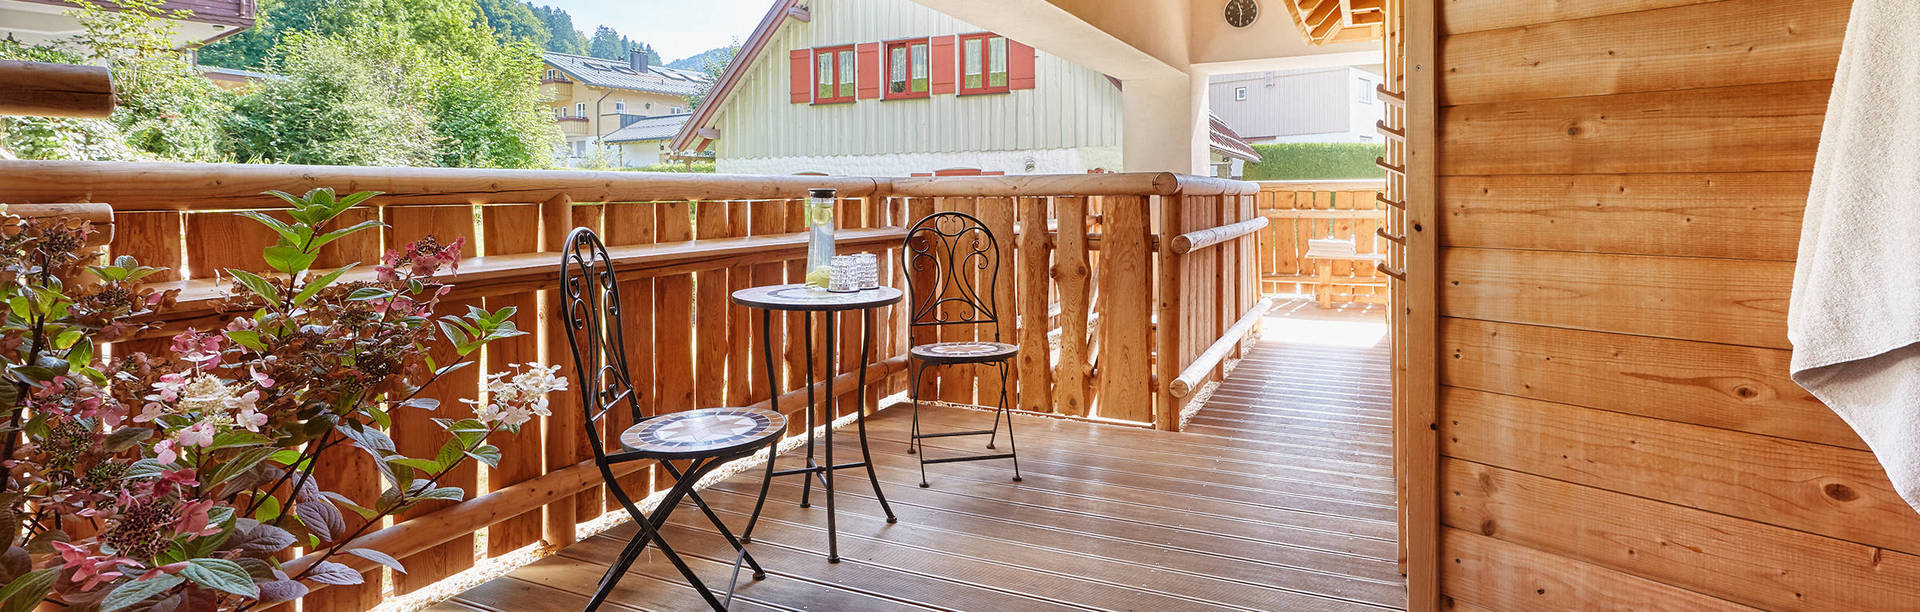 Terrasse im Saunabereich - Königshof Hotel-Resort Oberstaufen - Offizielle Webseite